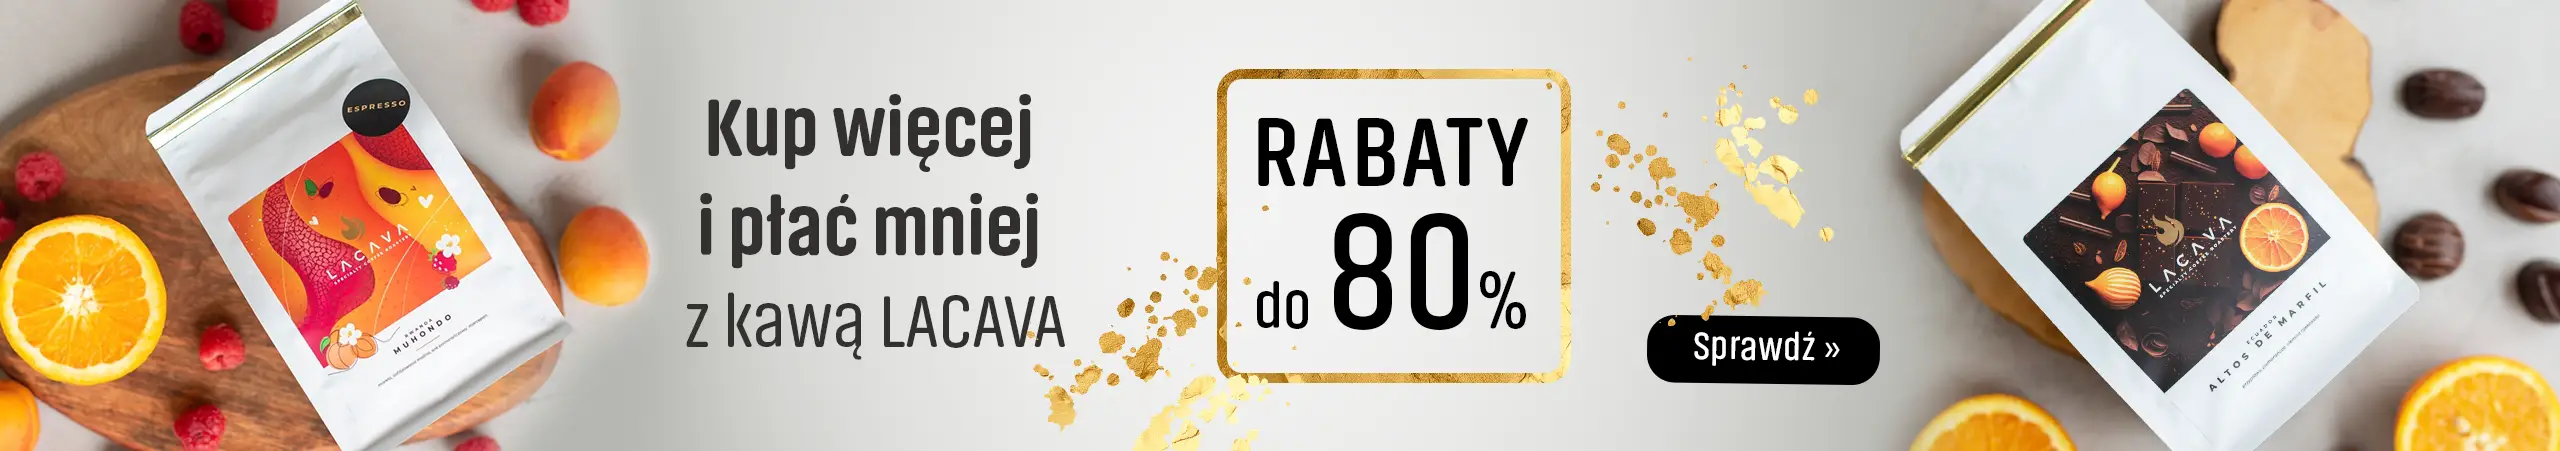 Kup więcej zapłać mniej - z kawami Lacava - Rabat do 80%